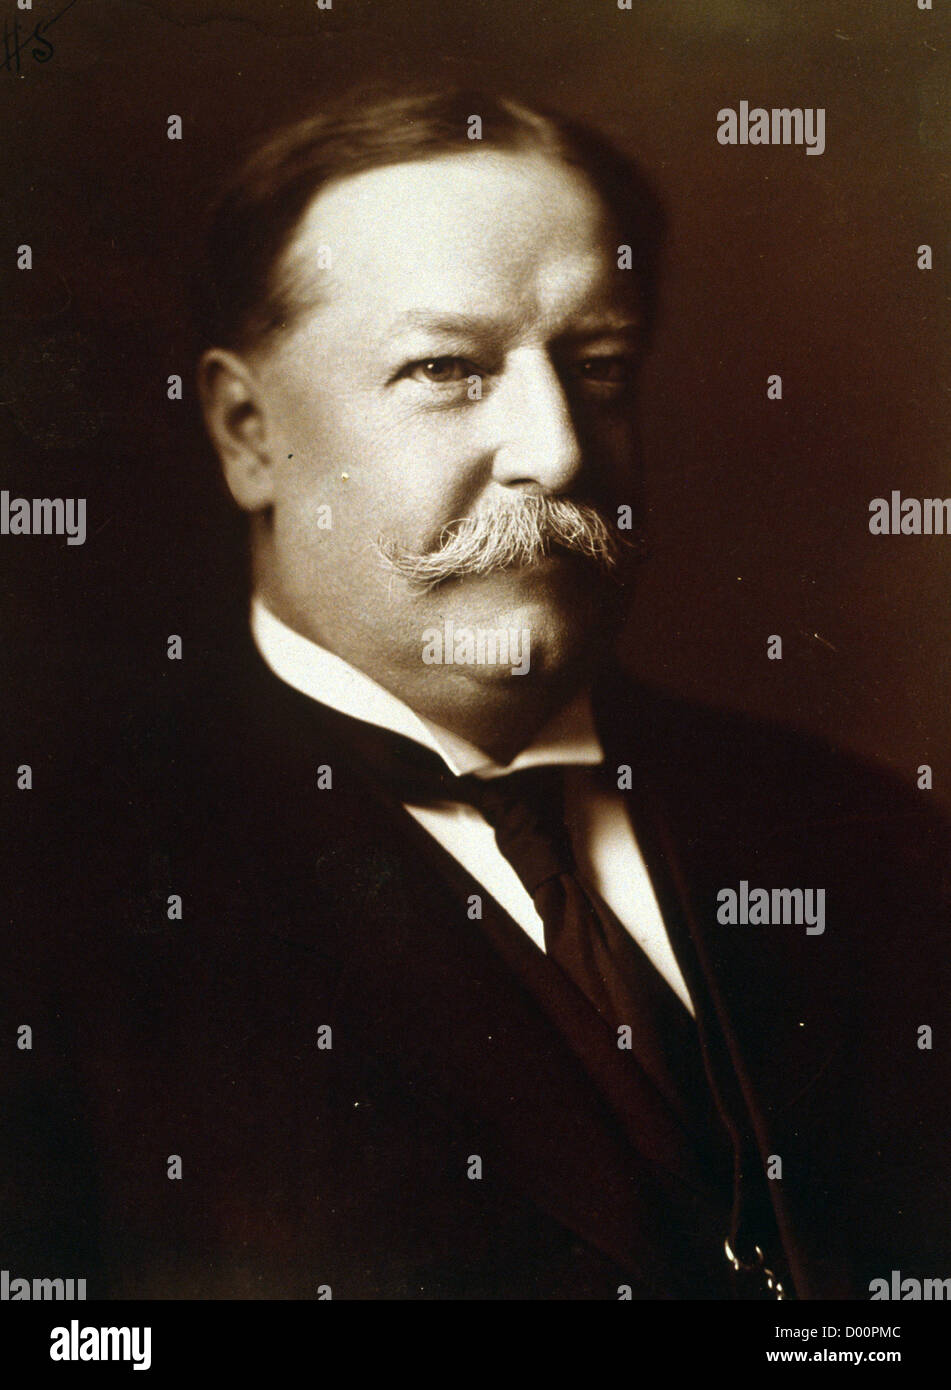 William Howard Taft, le 27e président des États-Unis Banque D'Images